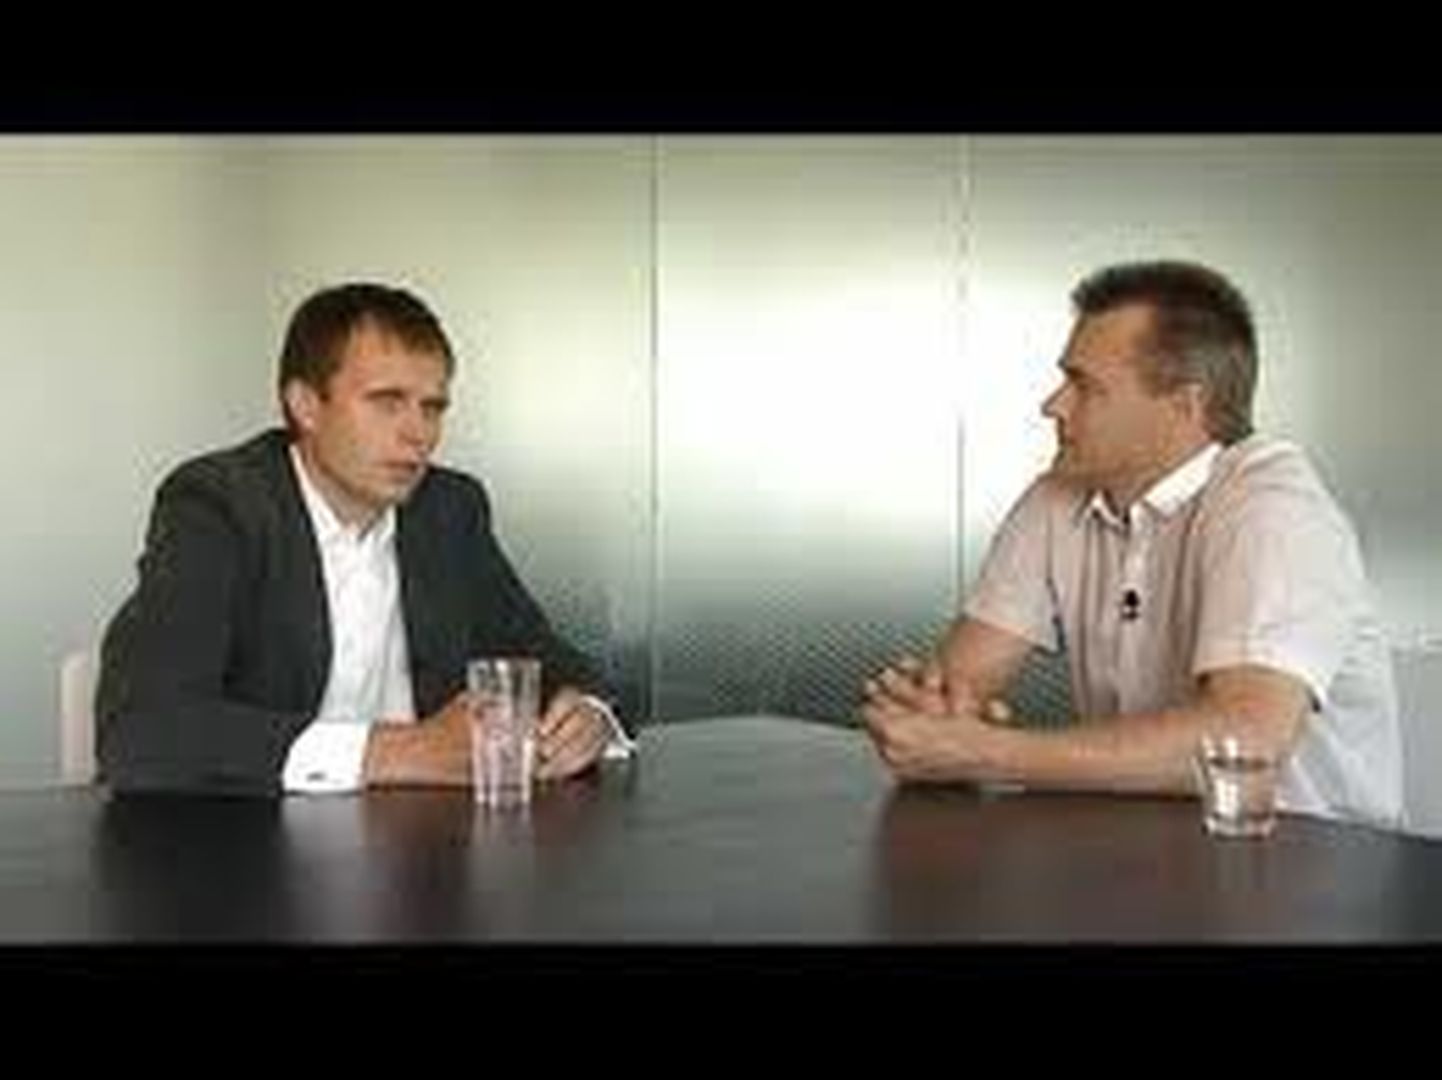 Risto Rossar (vasakult) mait raavale intervjuud andmas.